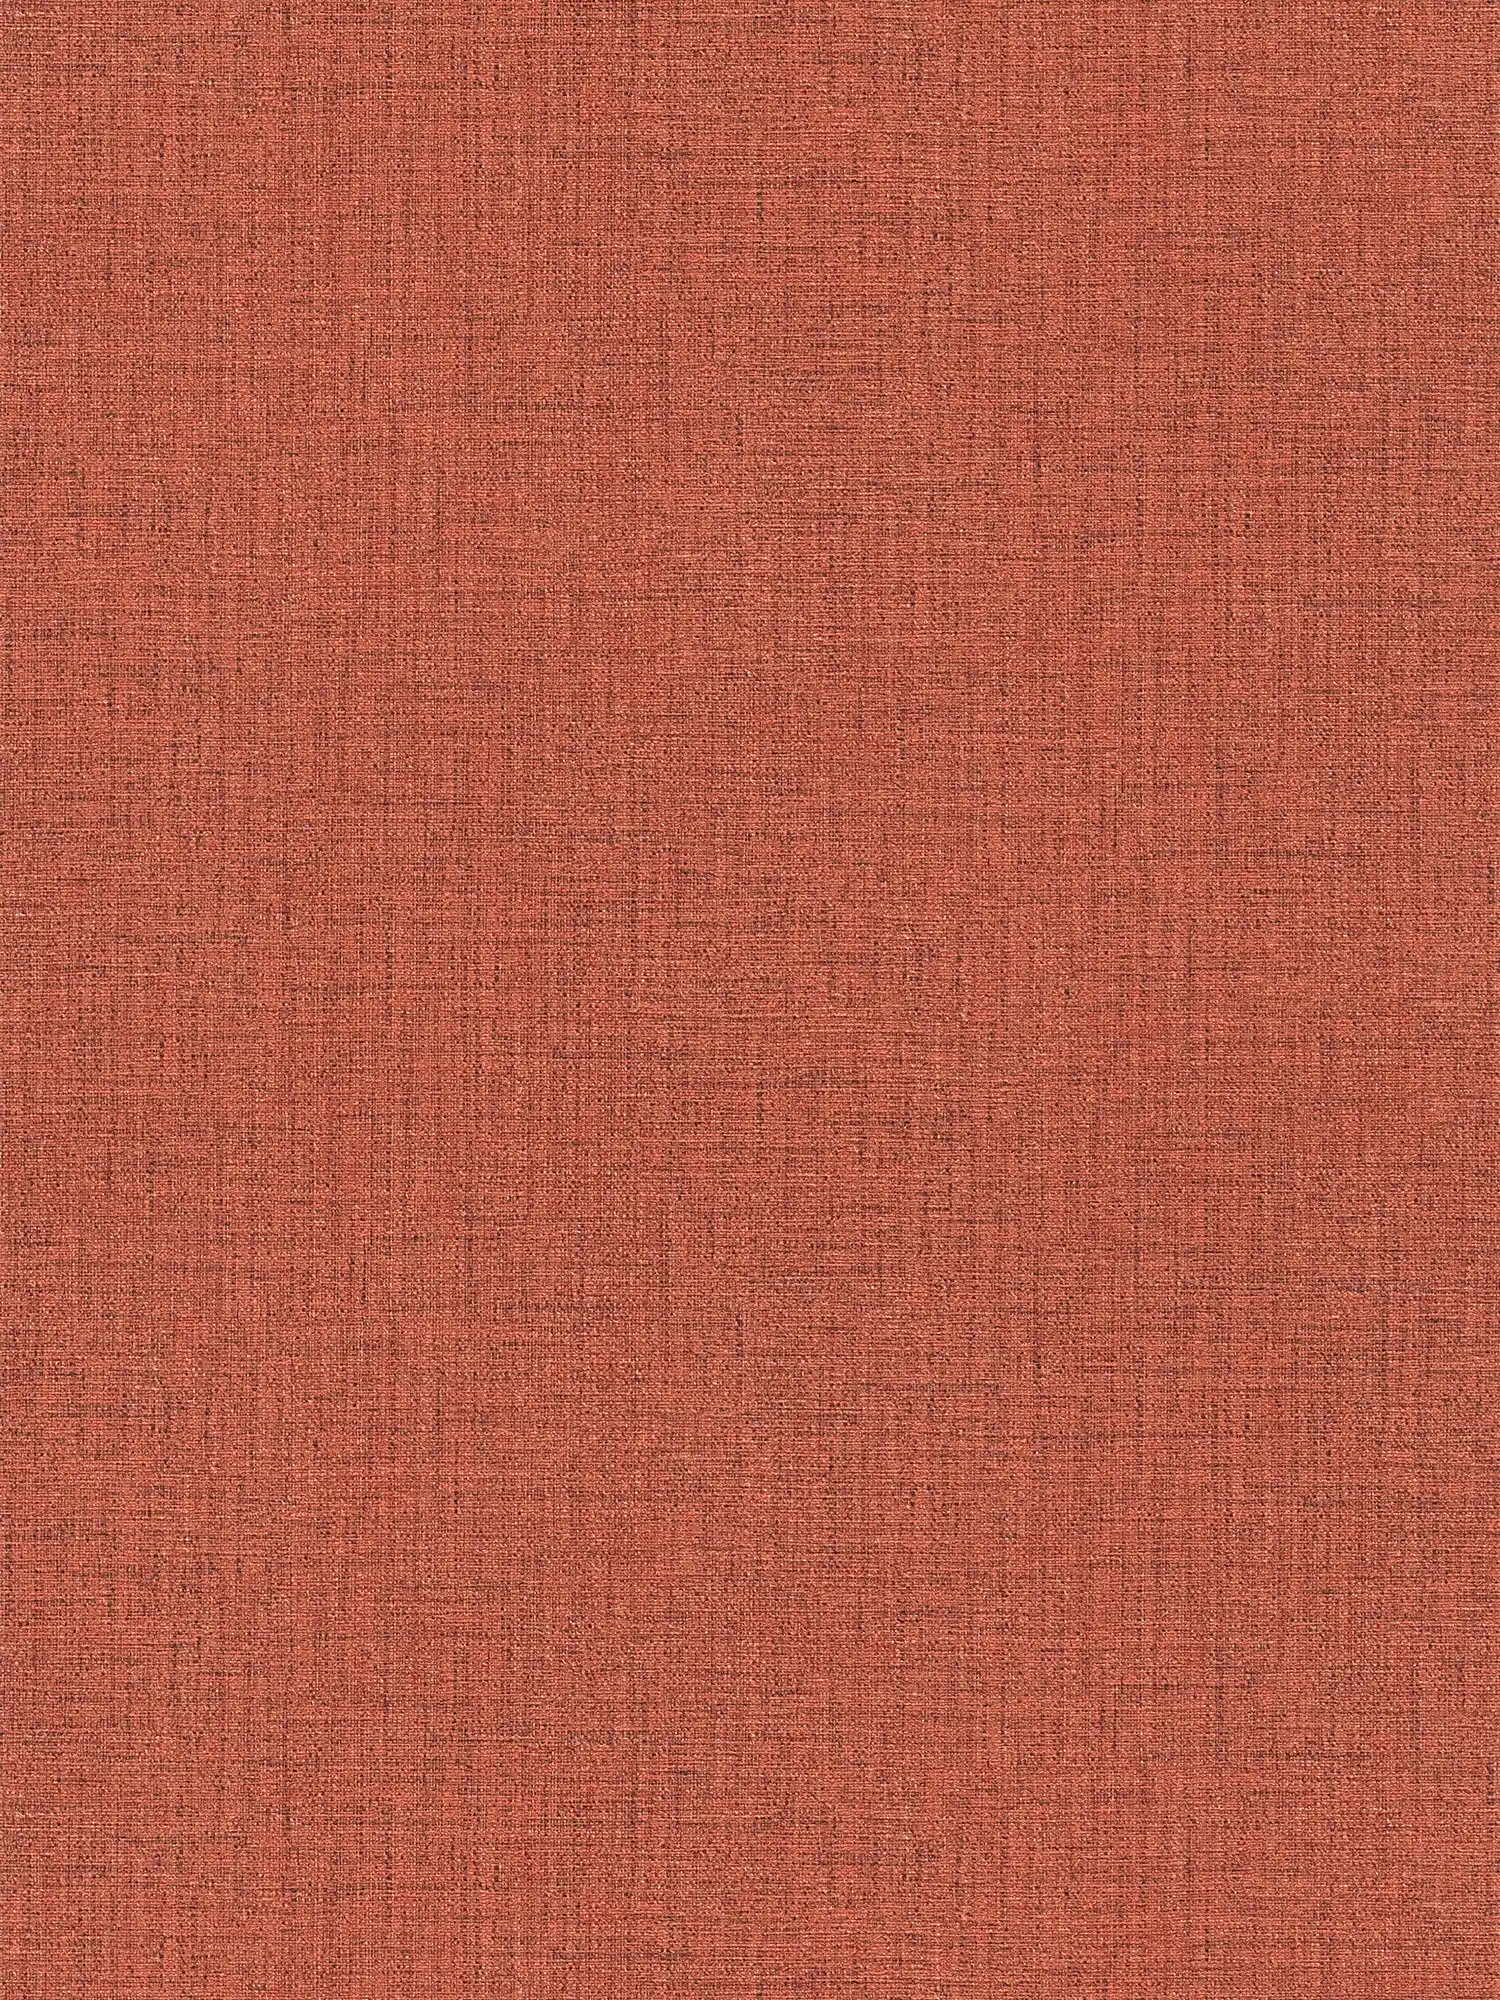 Papel pintado no tejido de color rojo con aspecto textil y diseño de estructura
